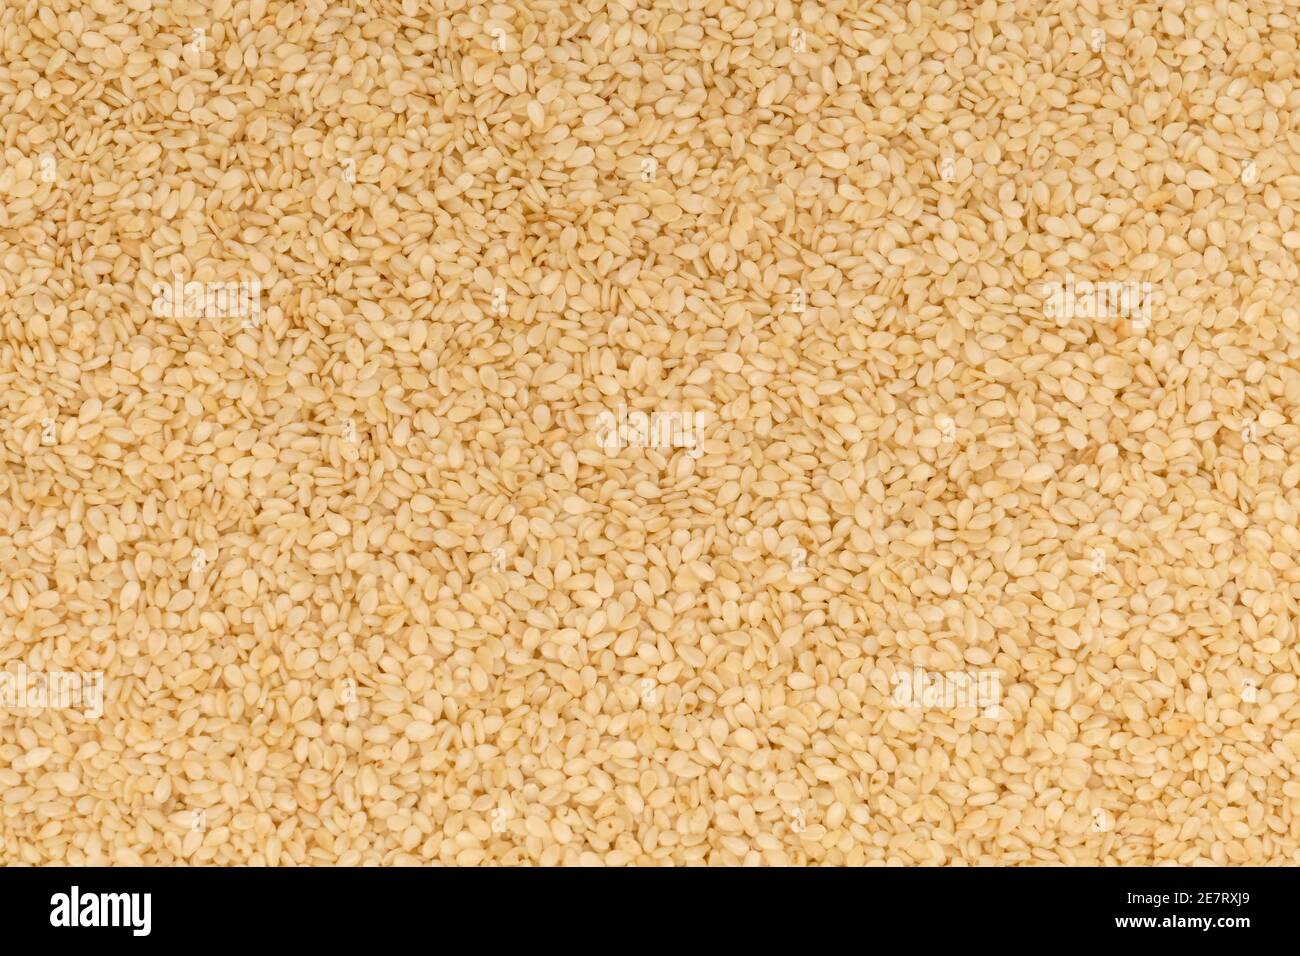 Closeup of sesame seeds Stock Photo